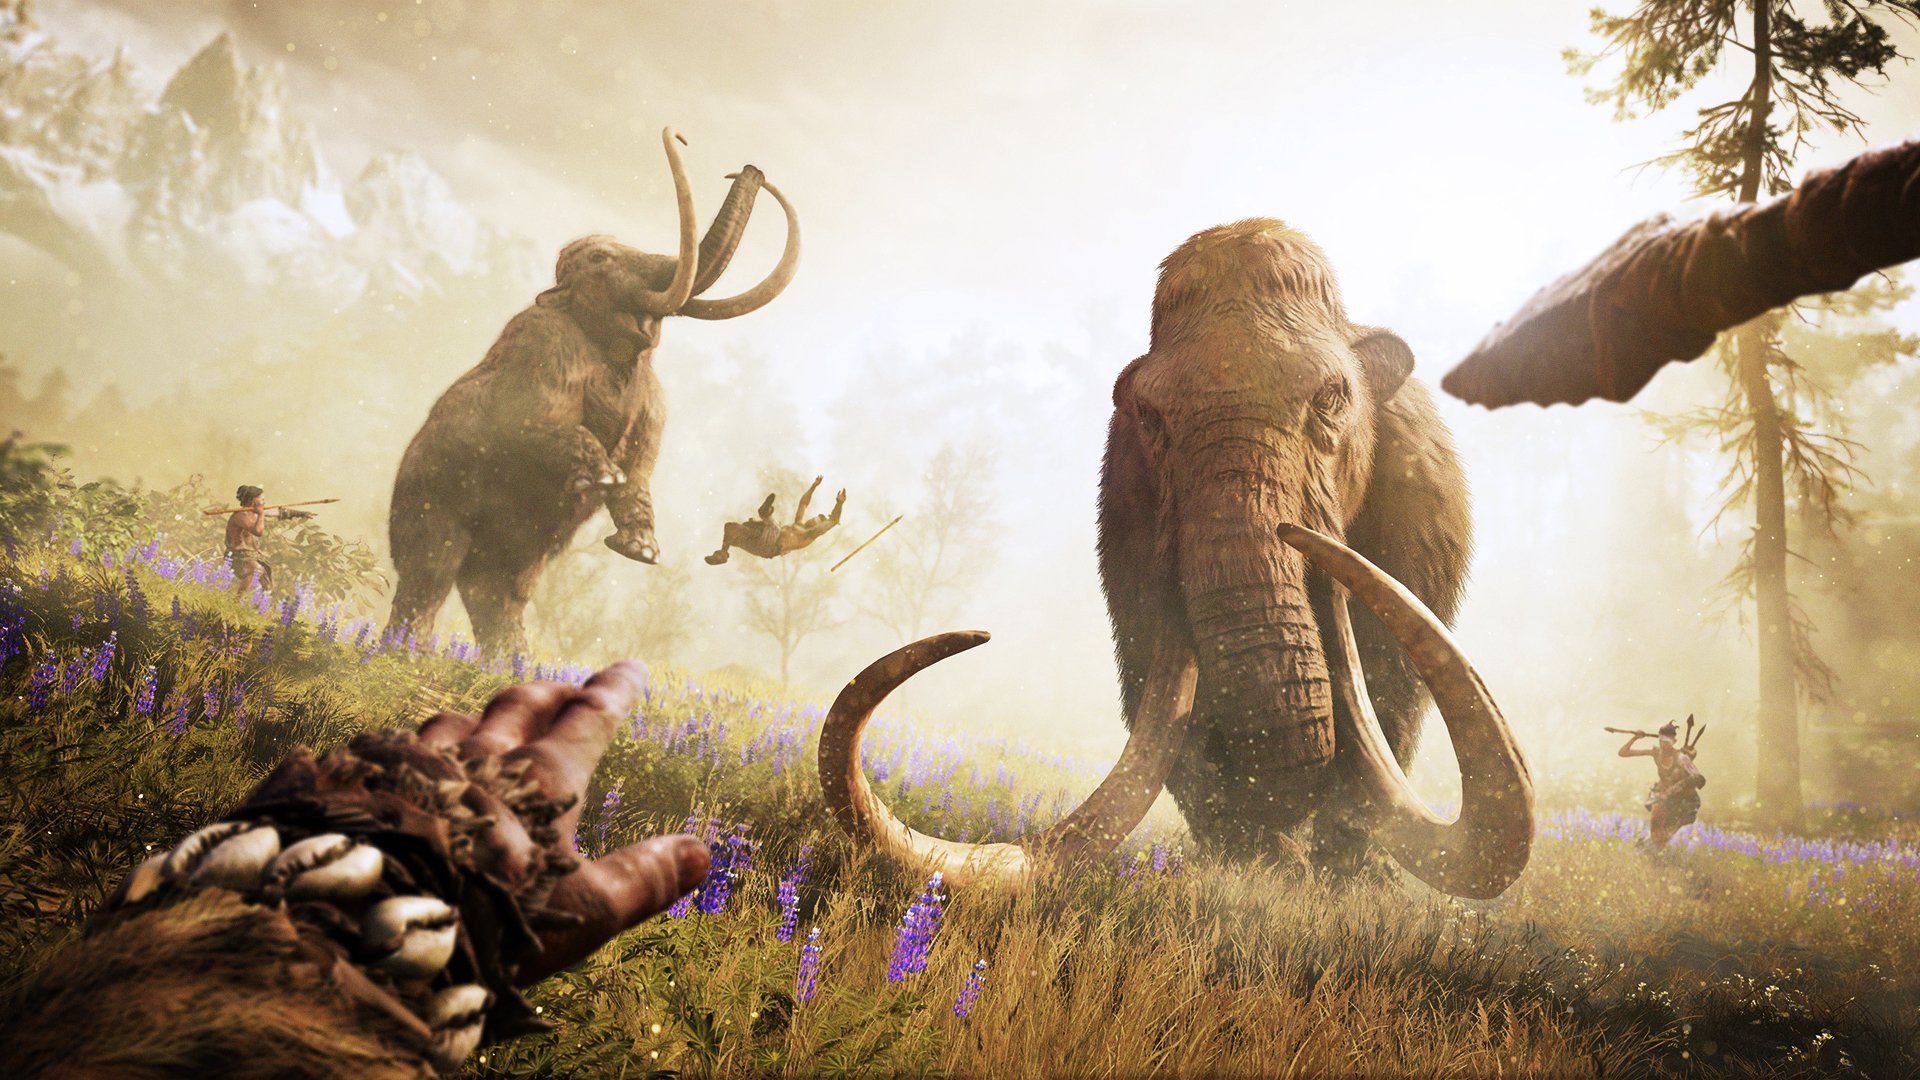 Prehistórico - Ubisoft anticipa el anuncio de una aventura de supervivencia en un mundo prehistórico Far_cry_primal-3208160